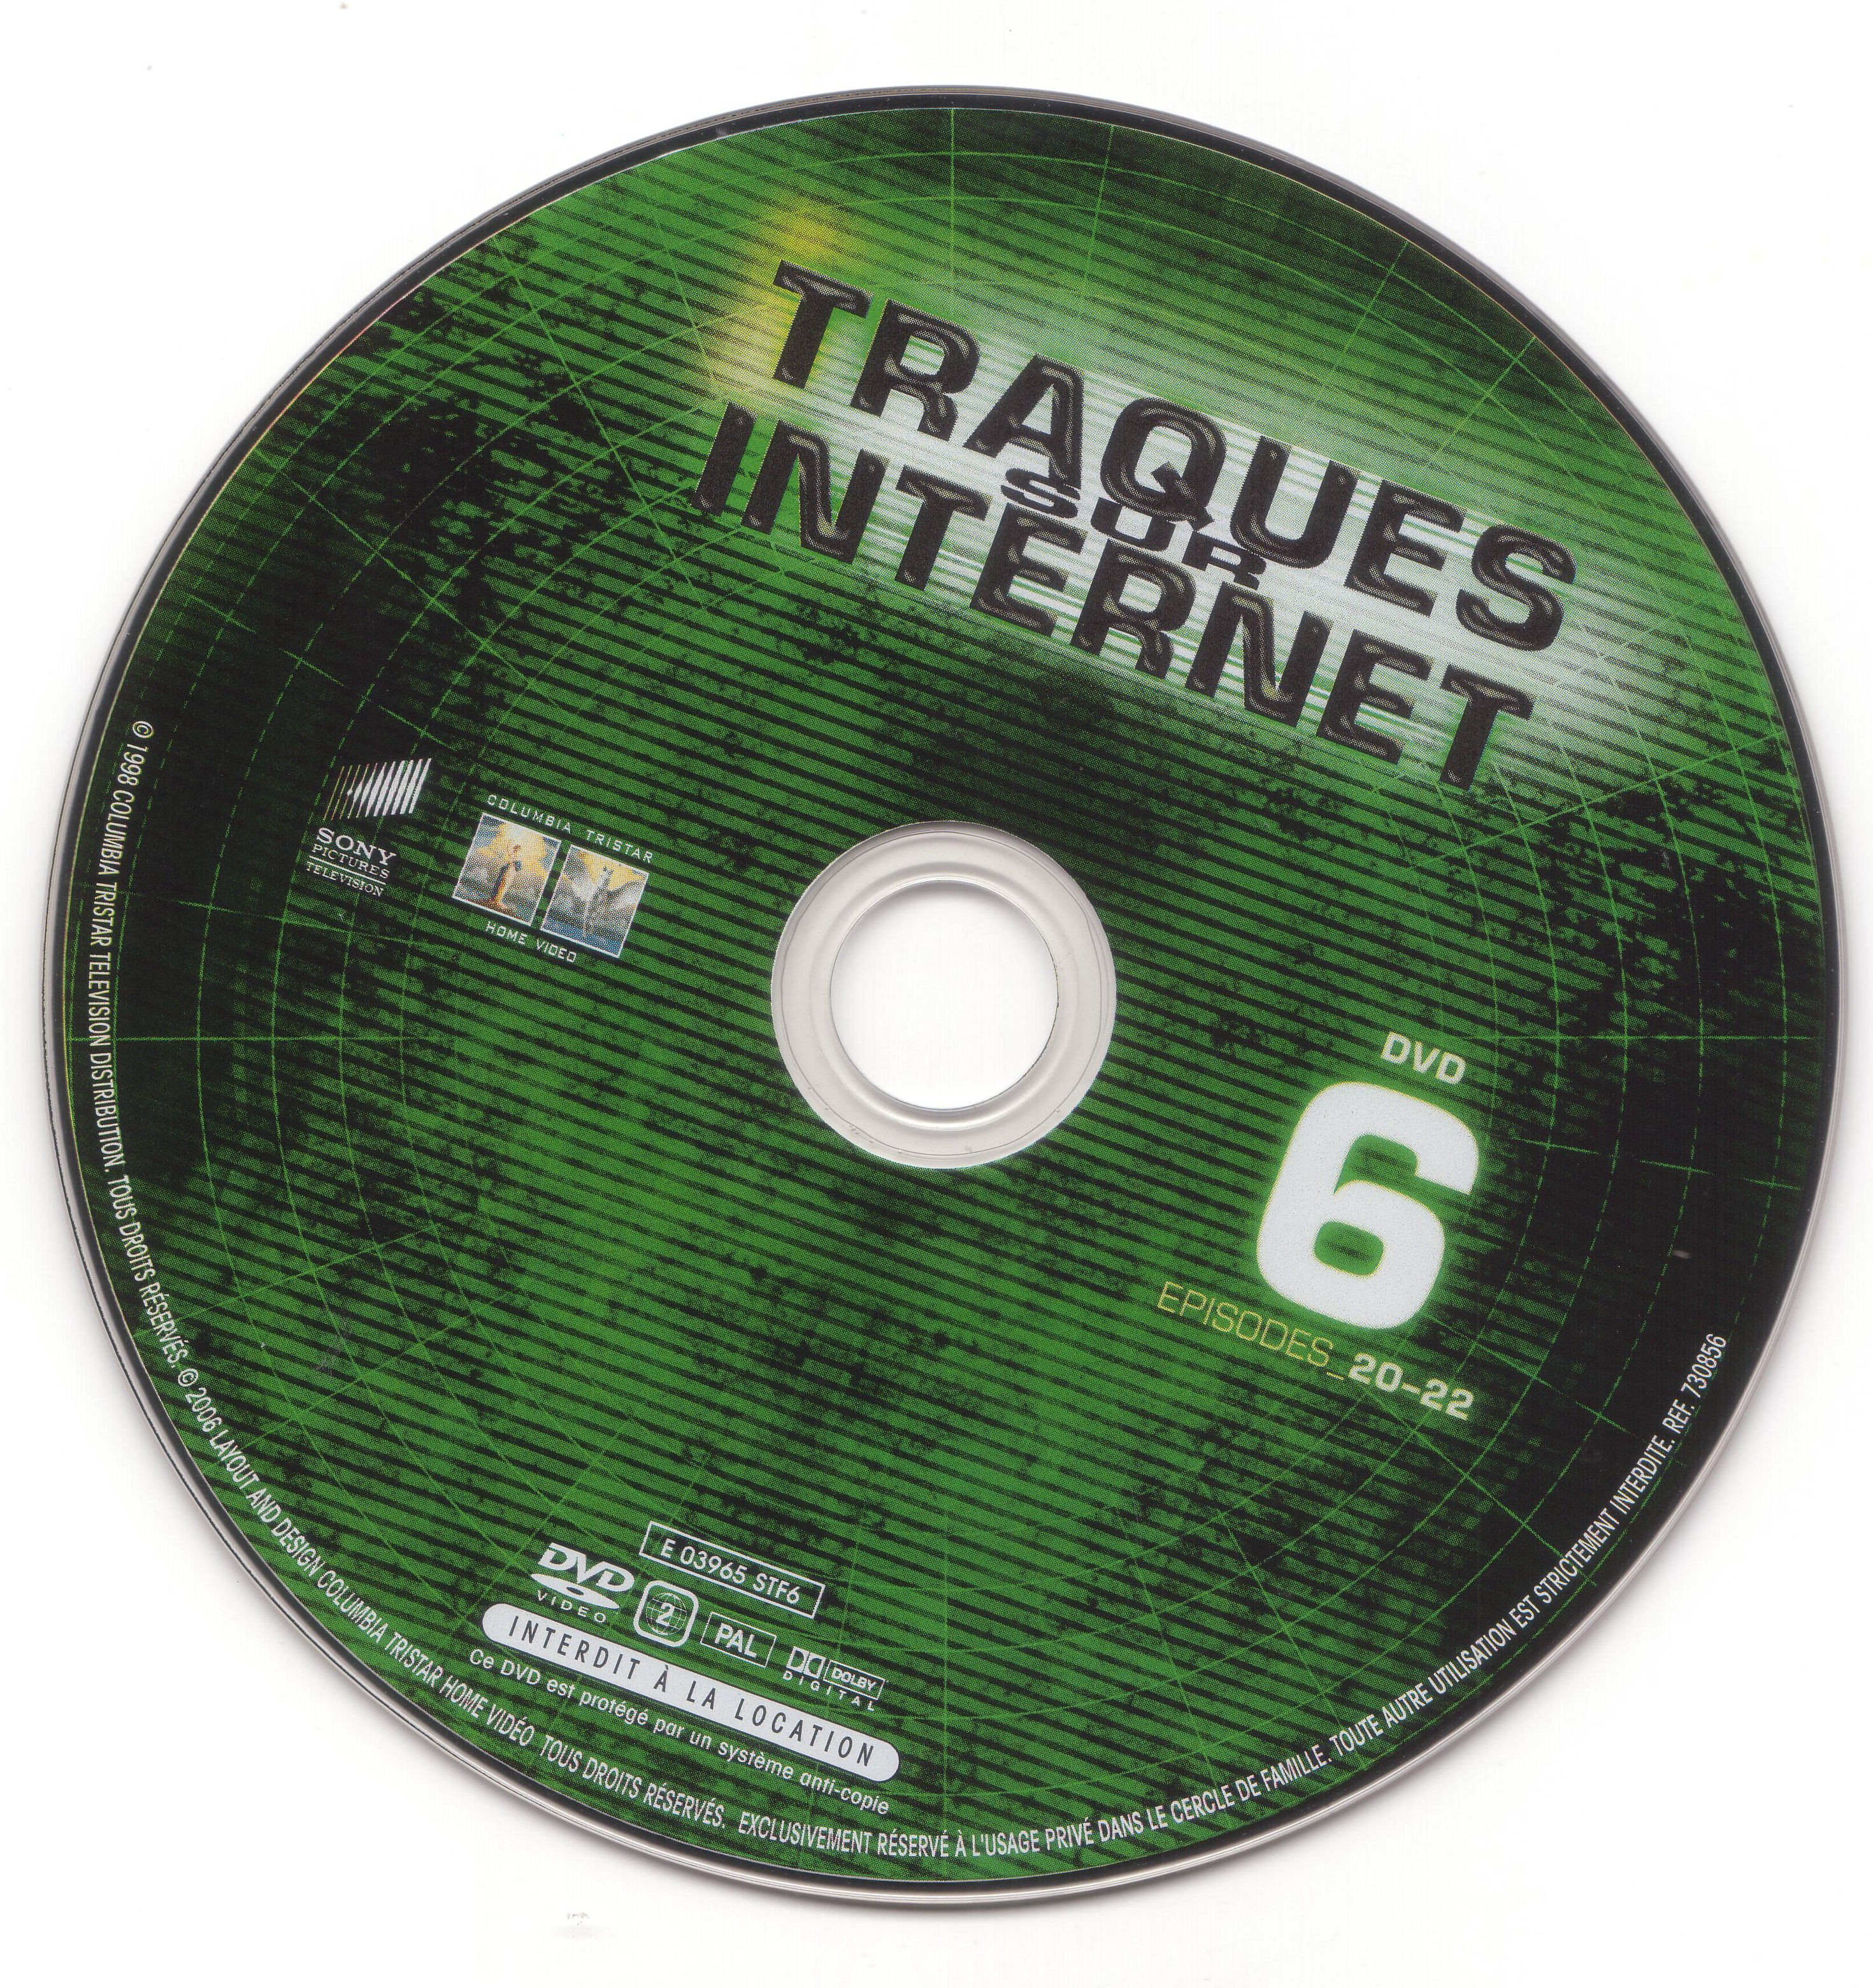 Traques sur internet disc 6